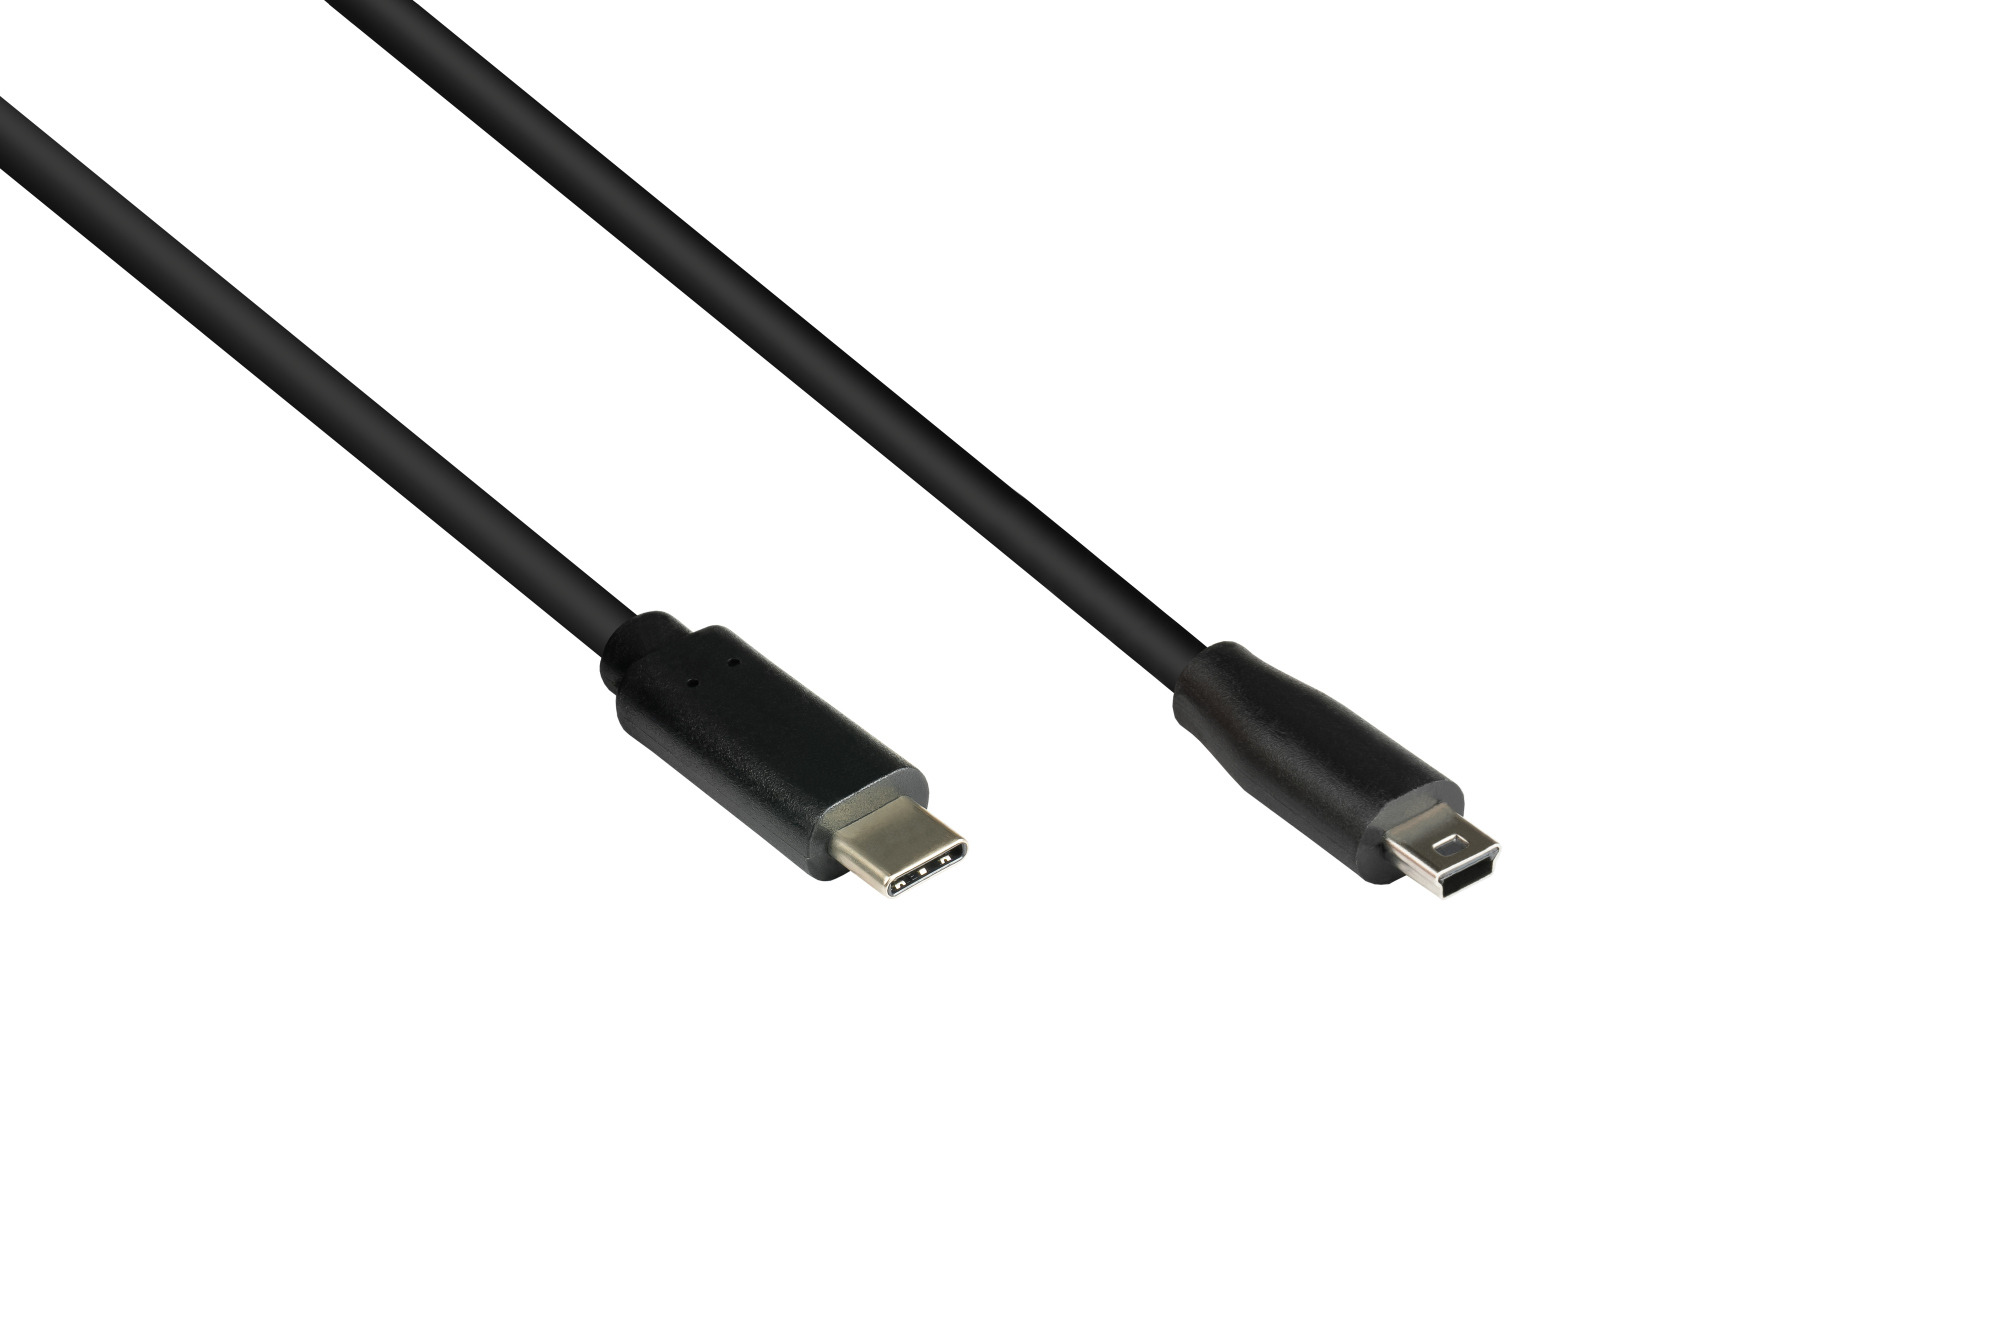 Anschlusskabel USB 2.0, USB-C™ Stecker an Stecker Mini B 5-pin, schwarz, 1,8m